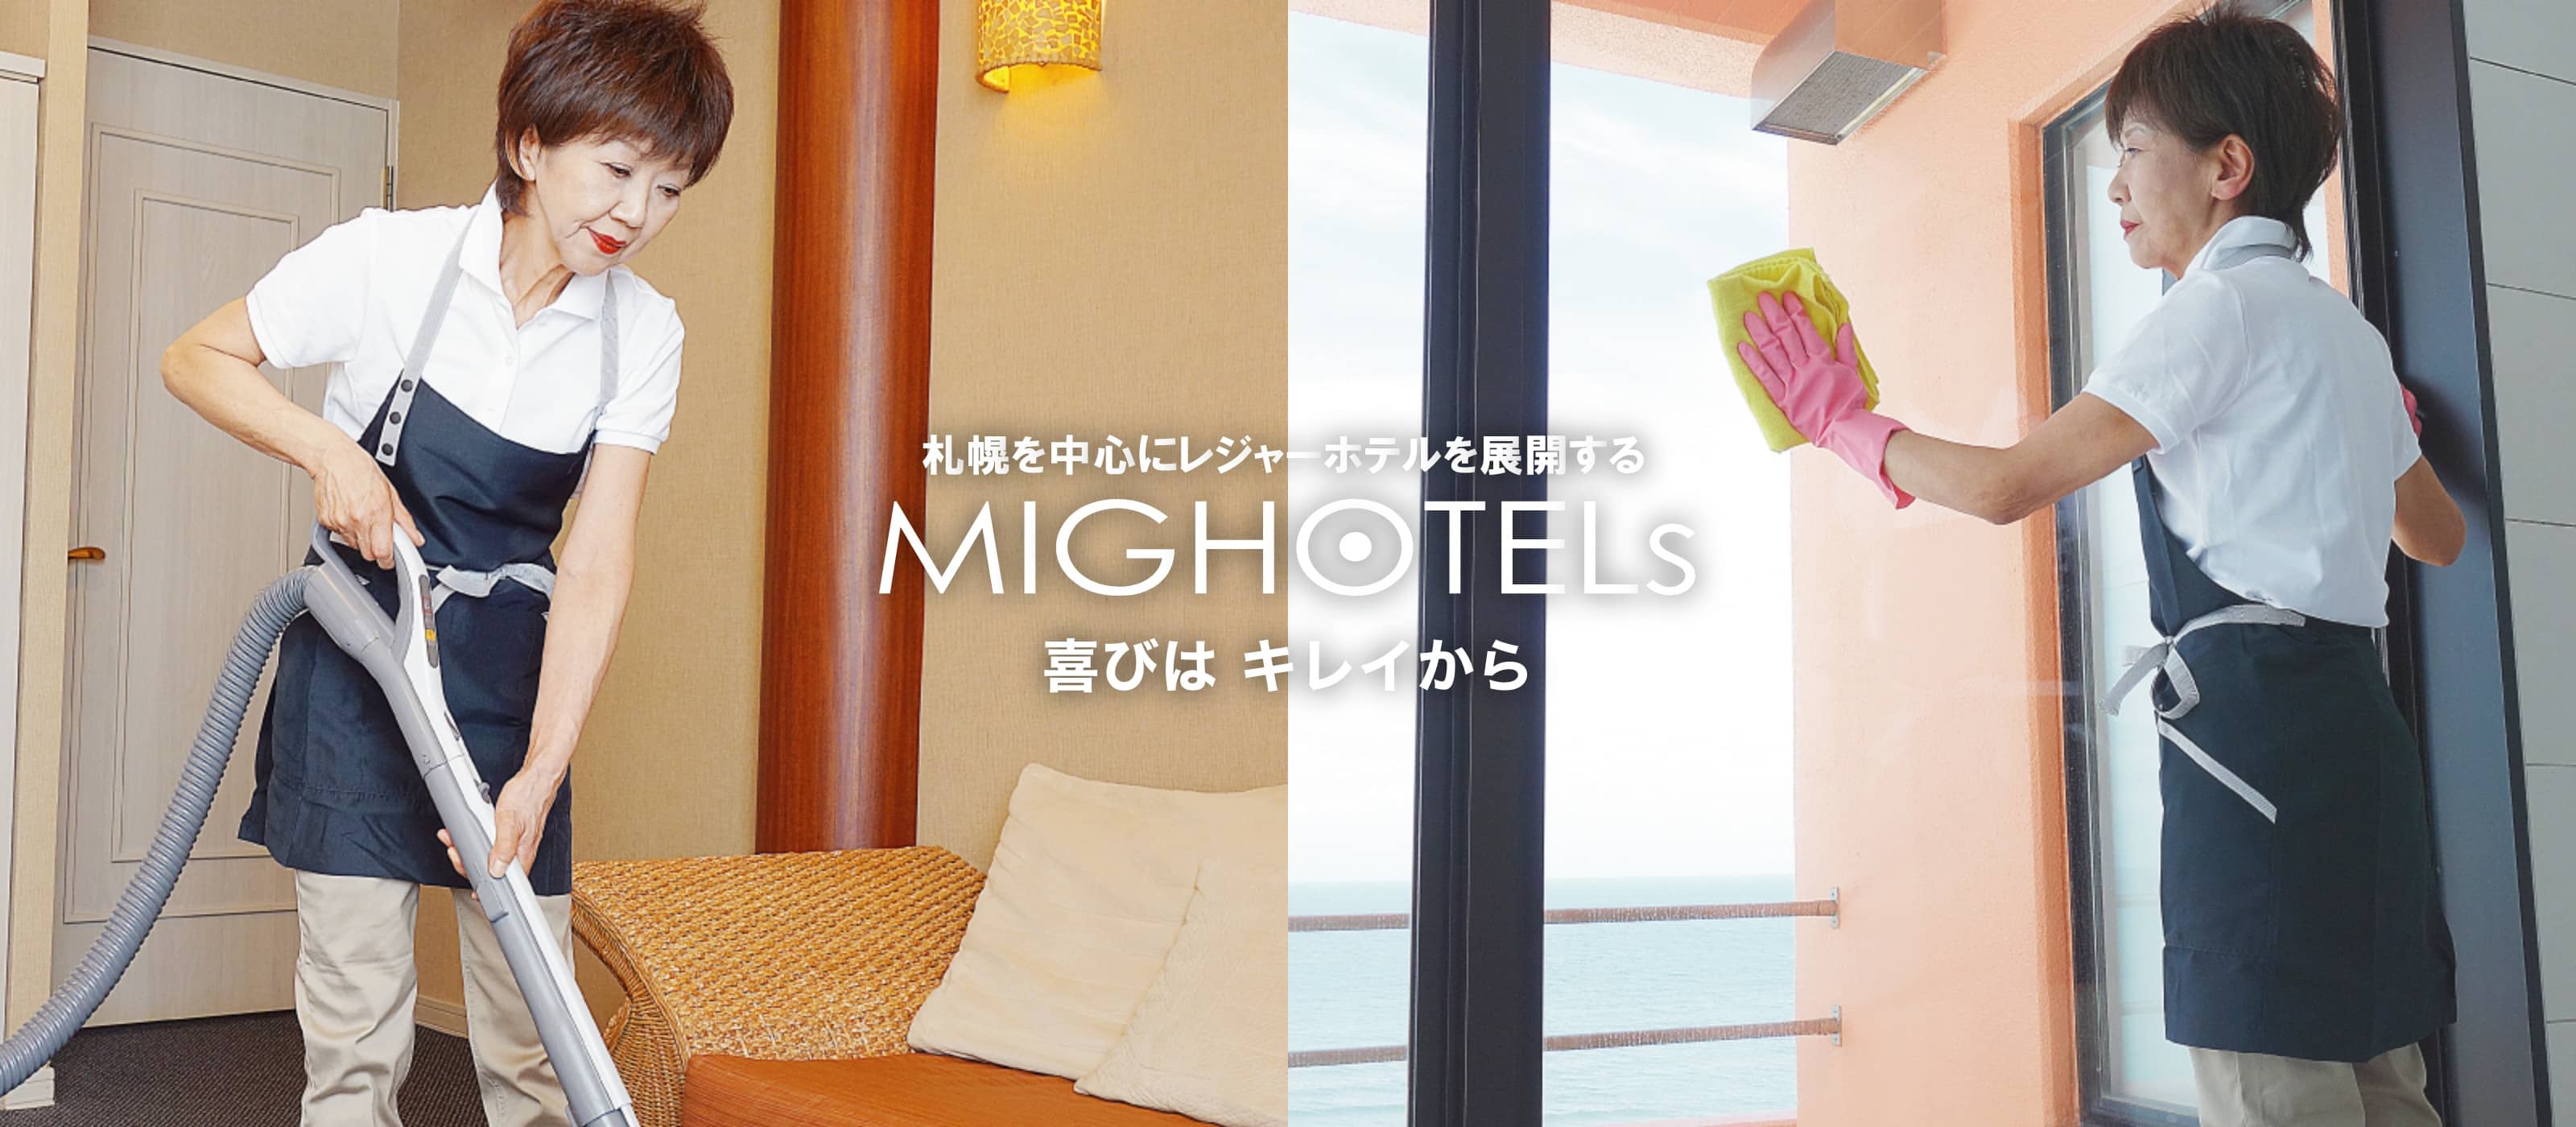 札幌を中心にレジャーホテルを展開する MIG HOTELs 喜びは キレイから